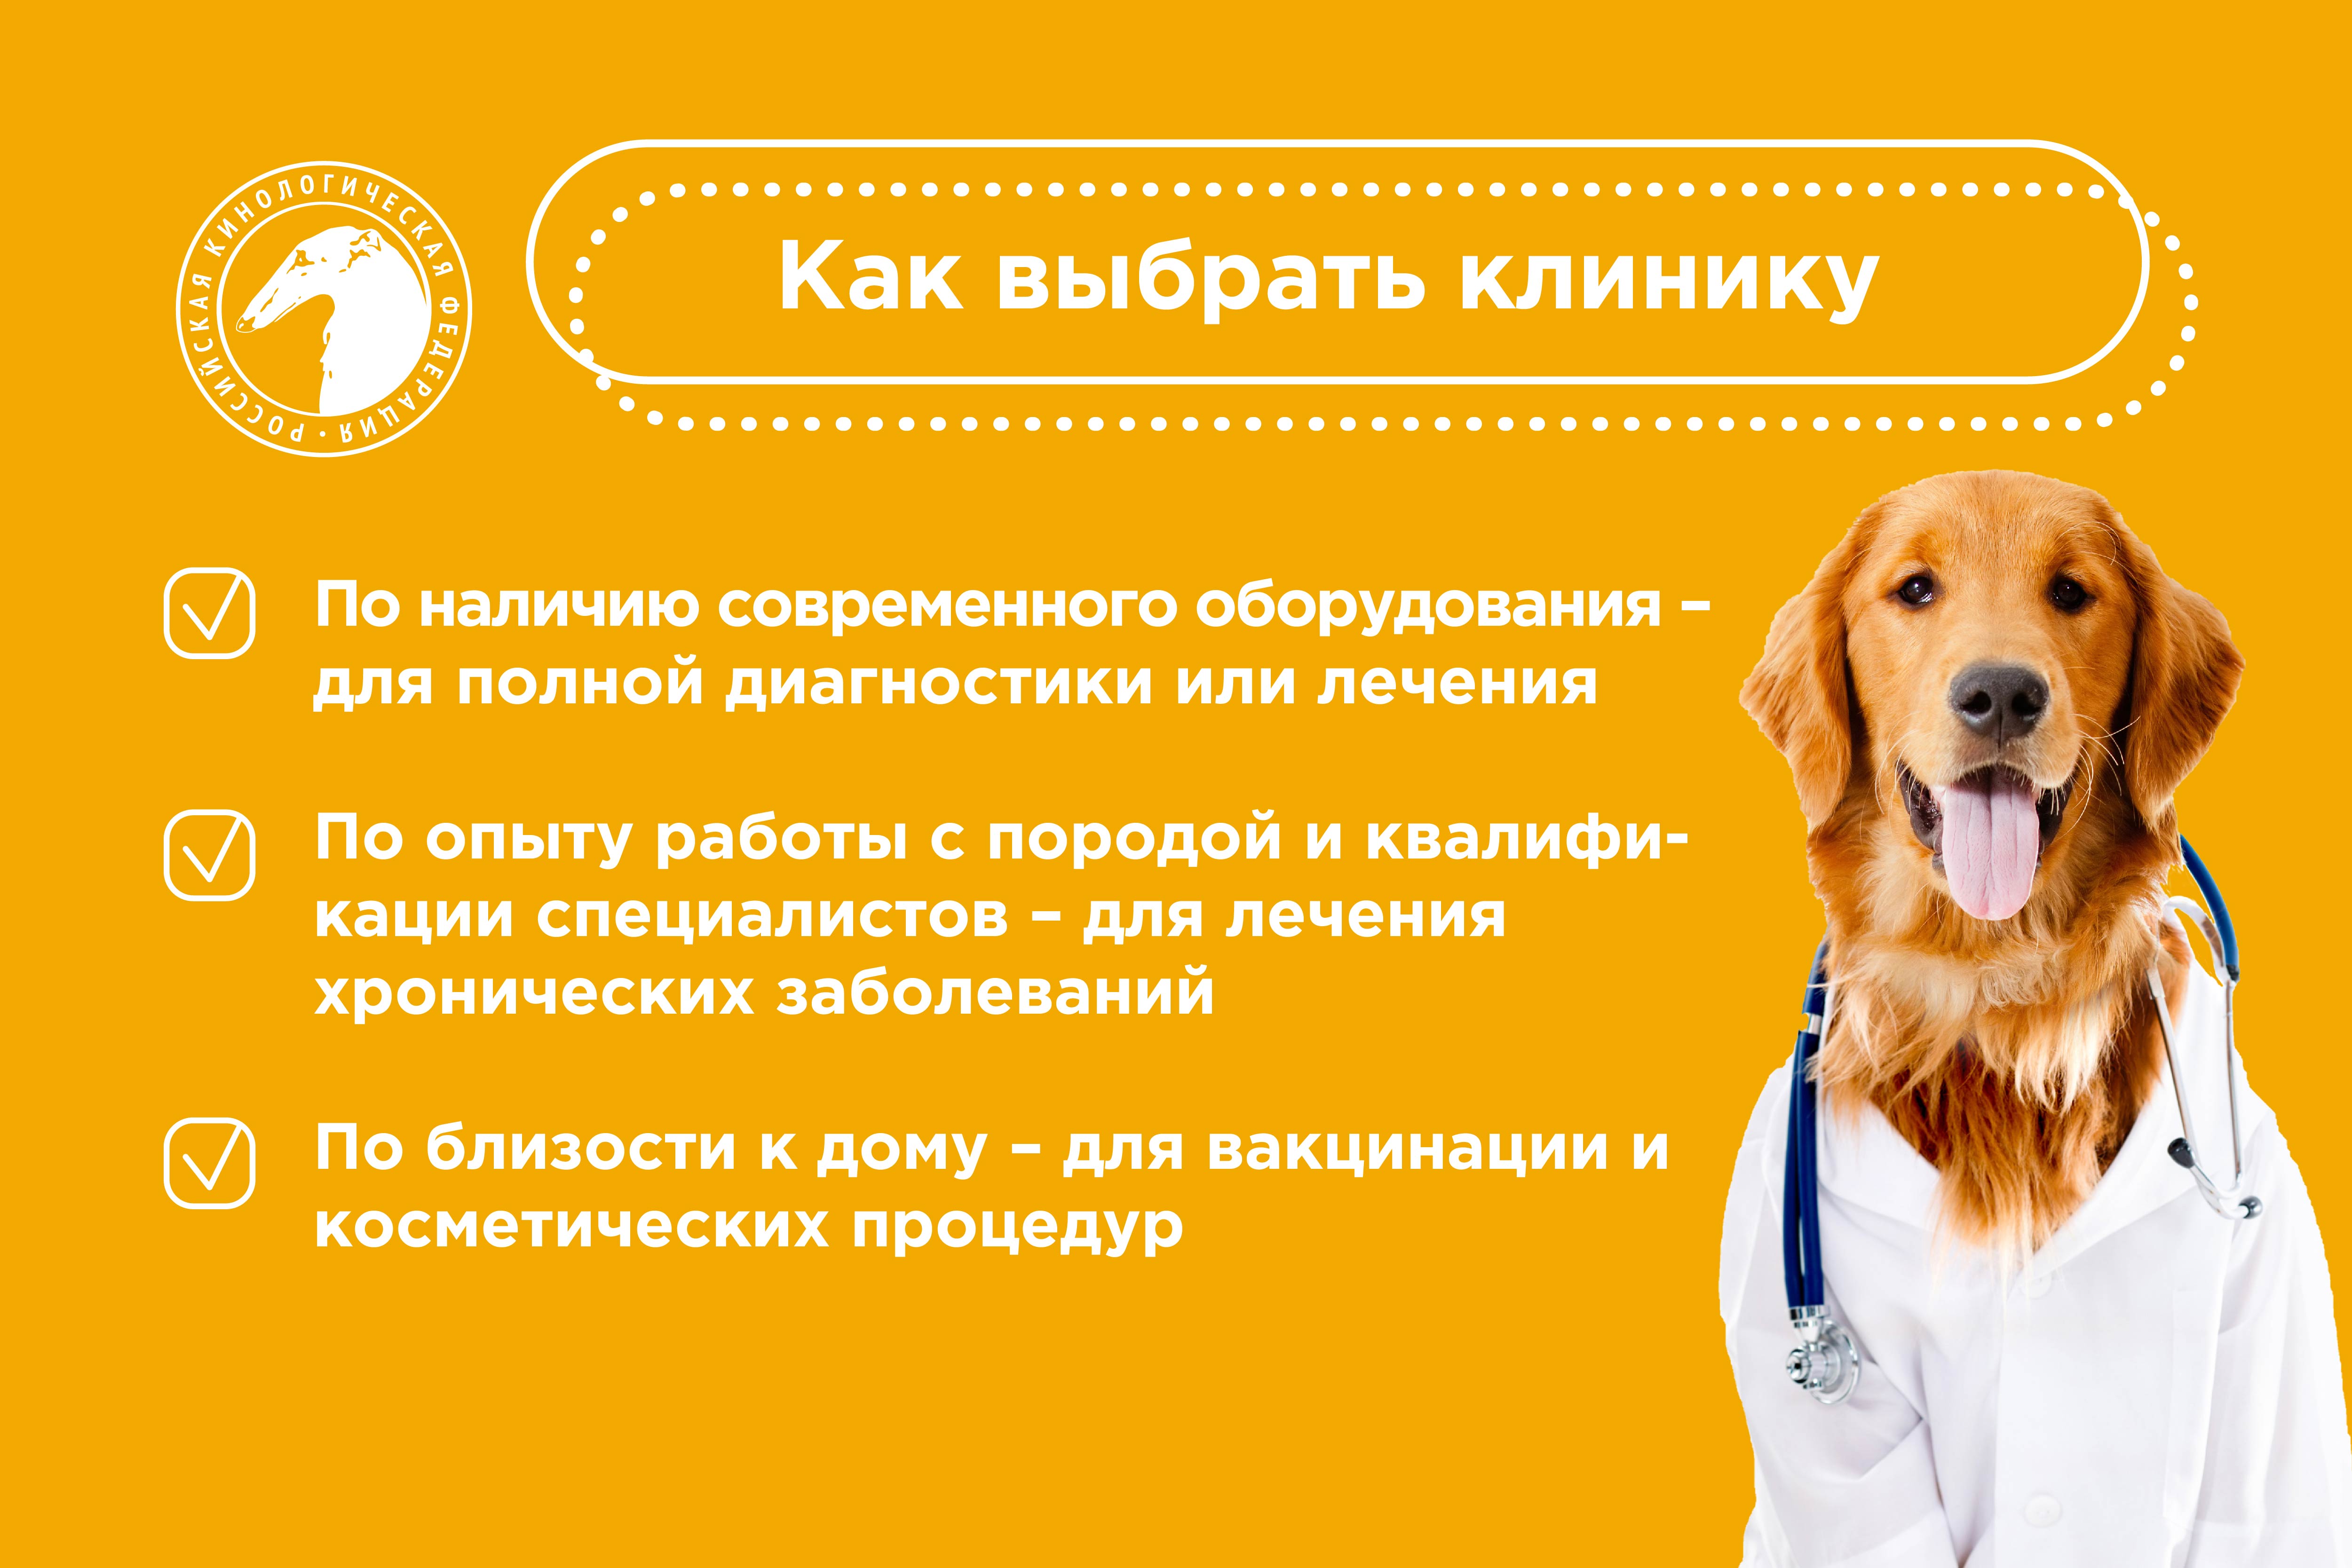 Как подготовиться к визиту к ветеринару?